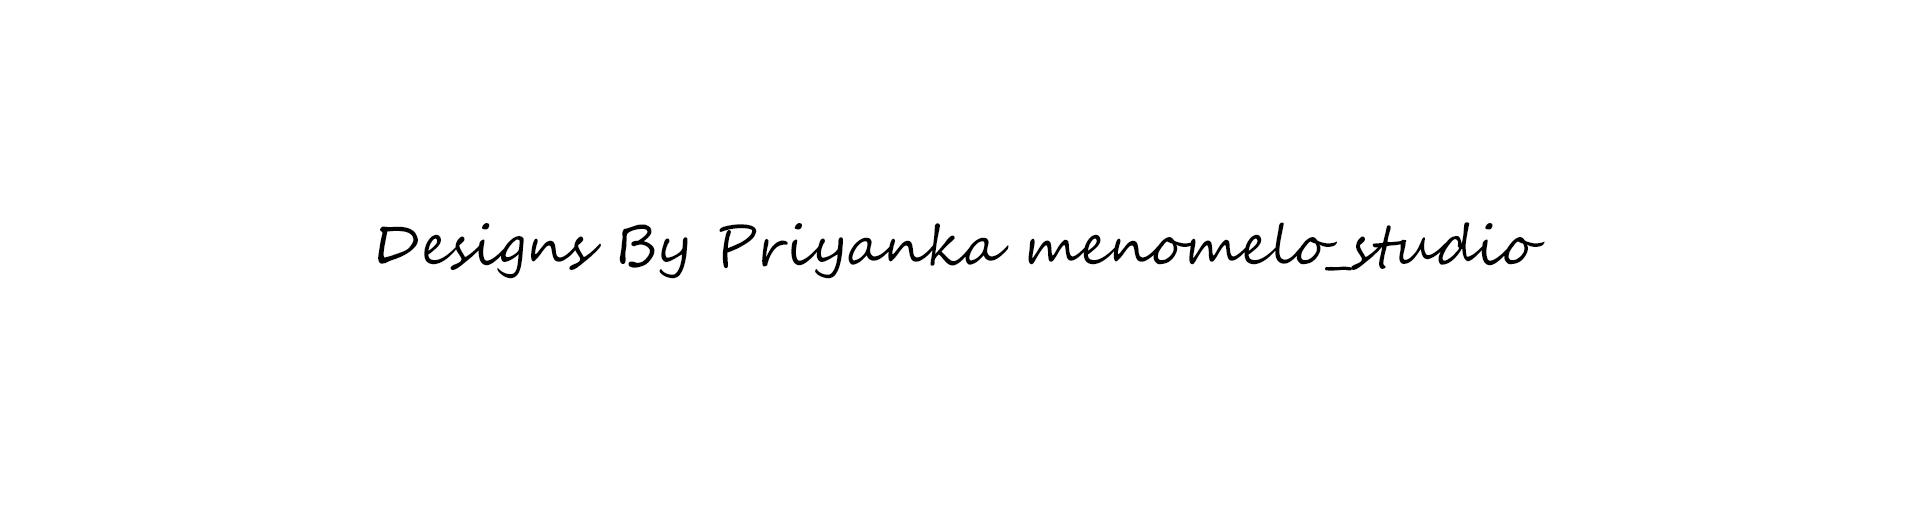 Priyanka menomelo_studio